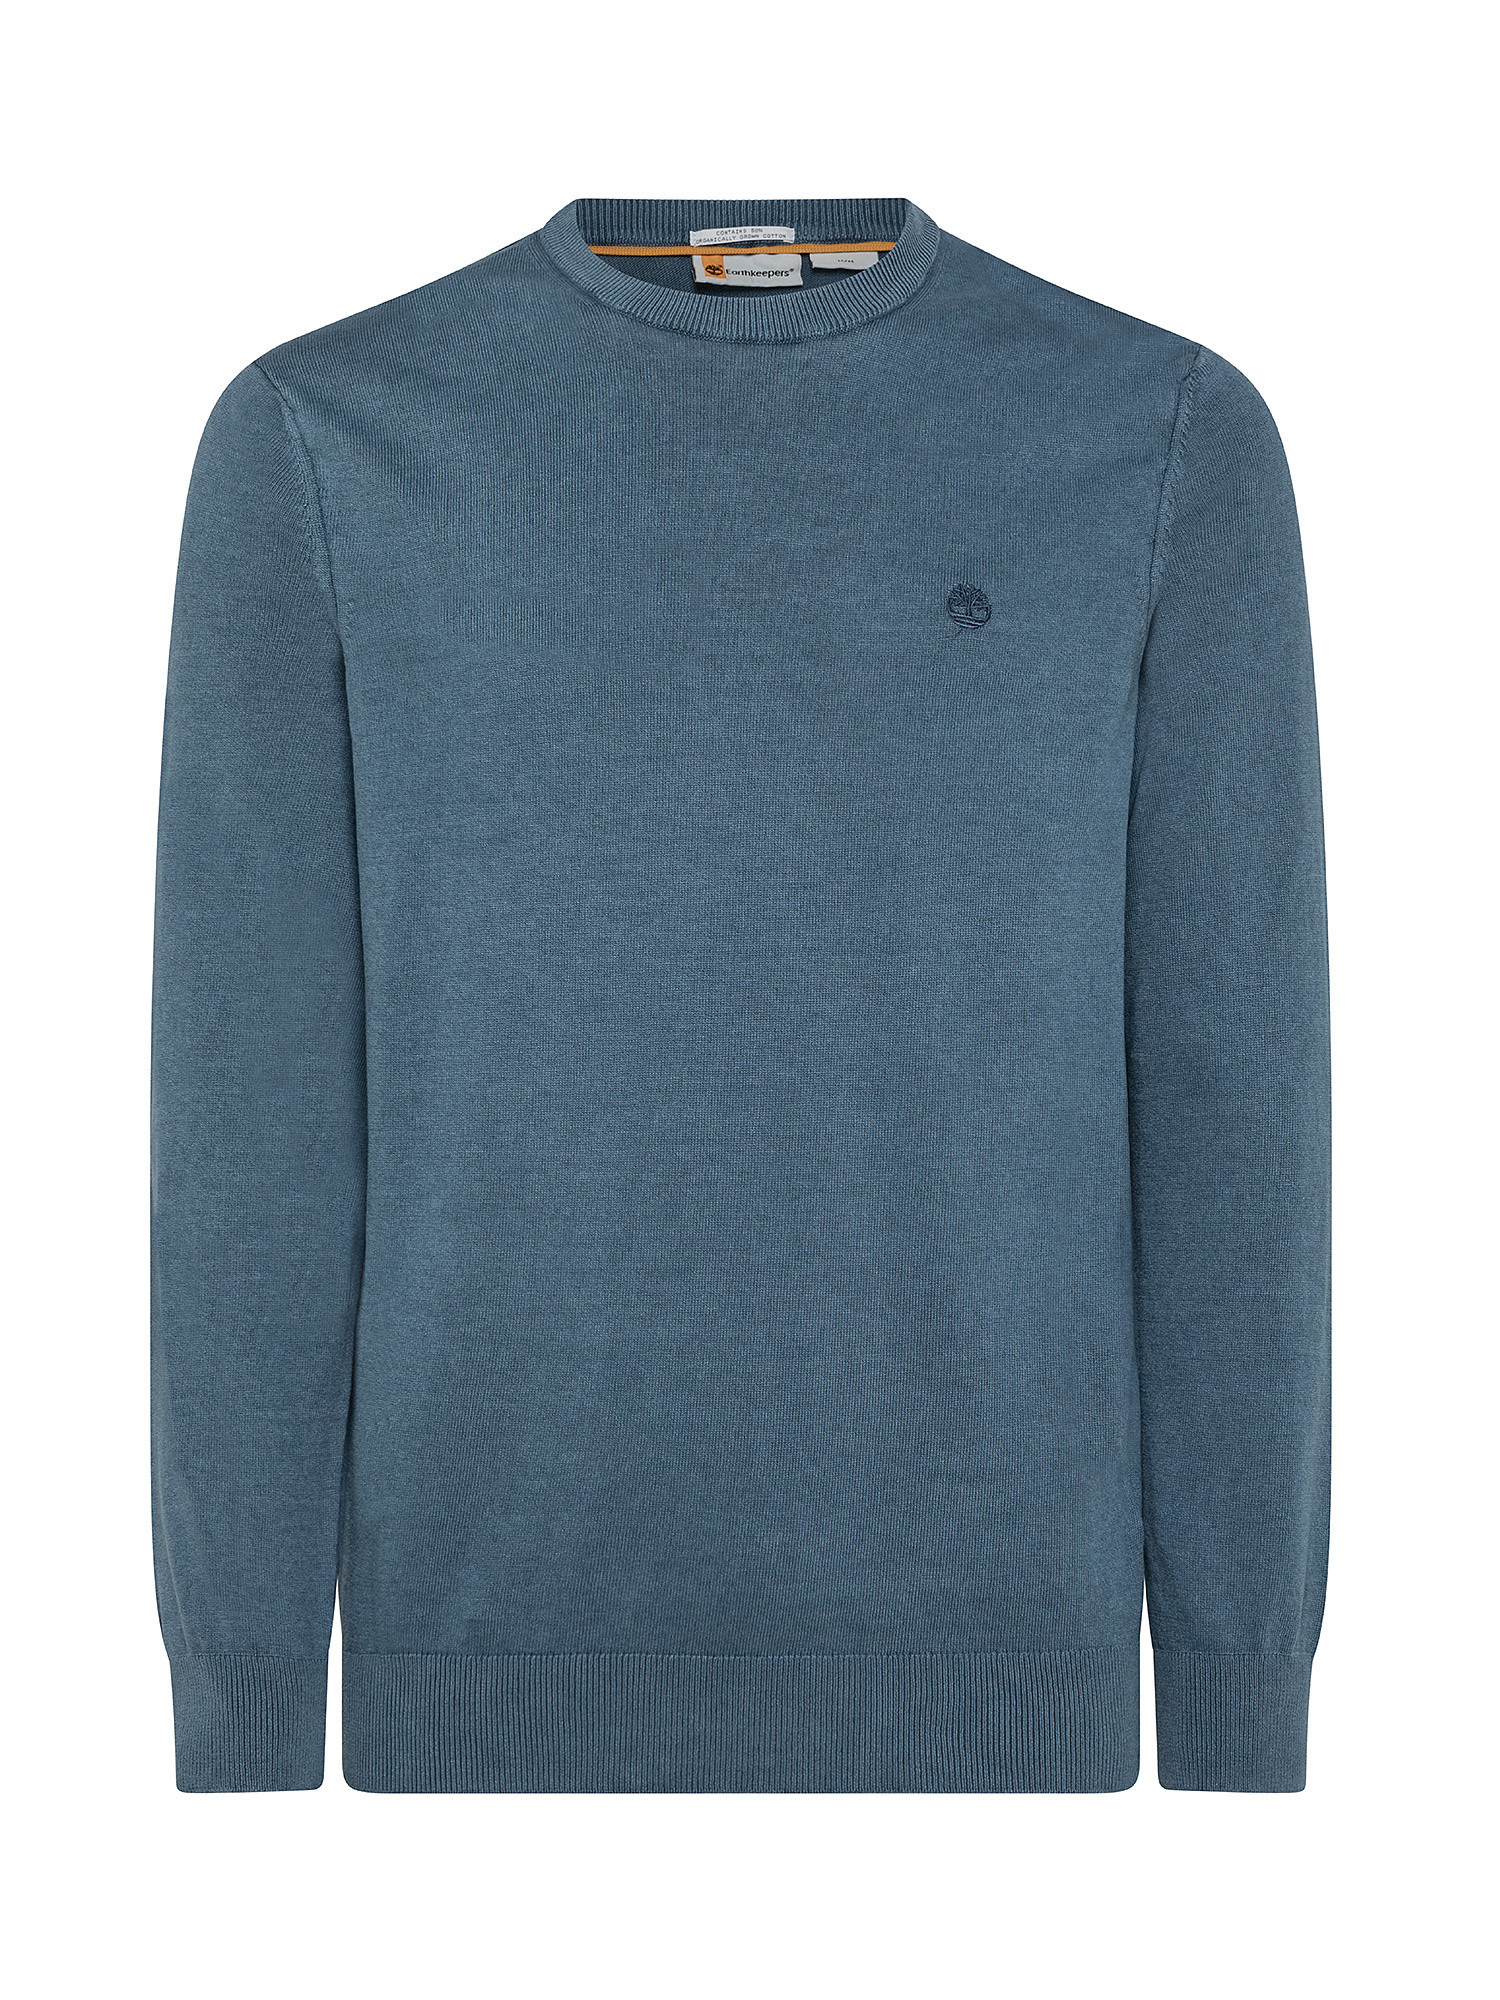 EK + Men's Lightweight Sweater, Blue, large image number 0